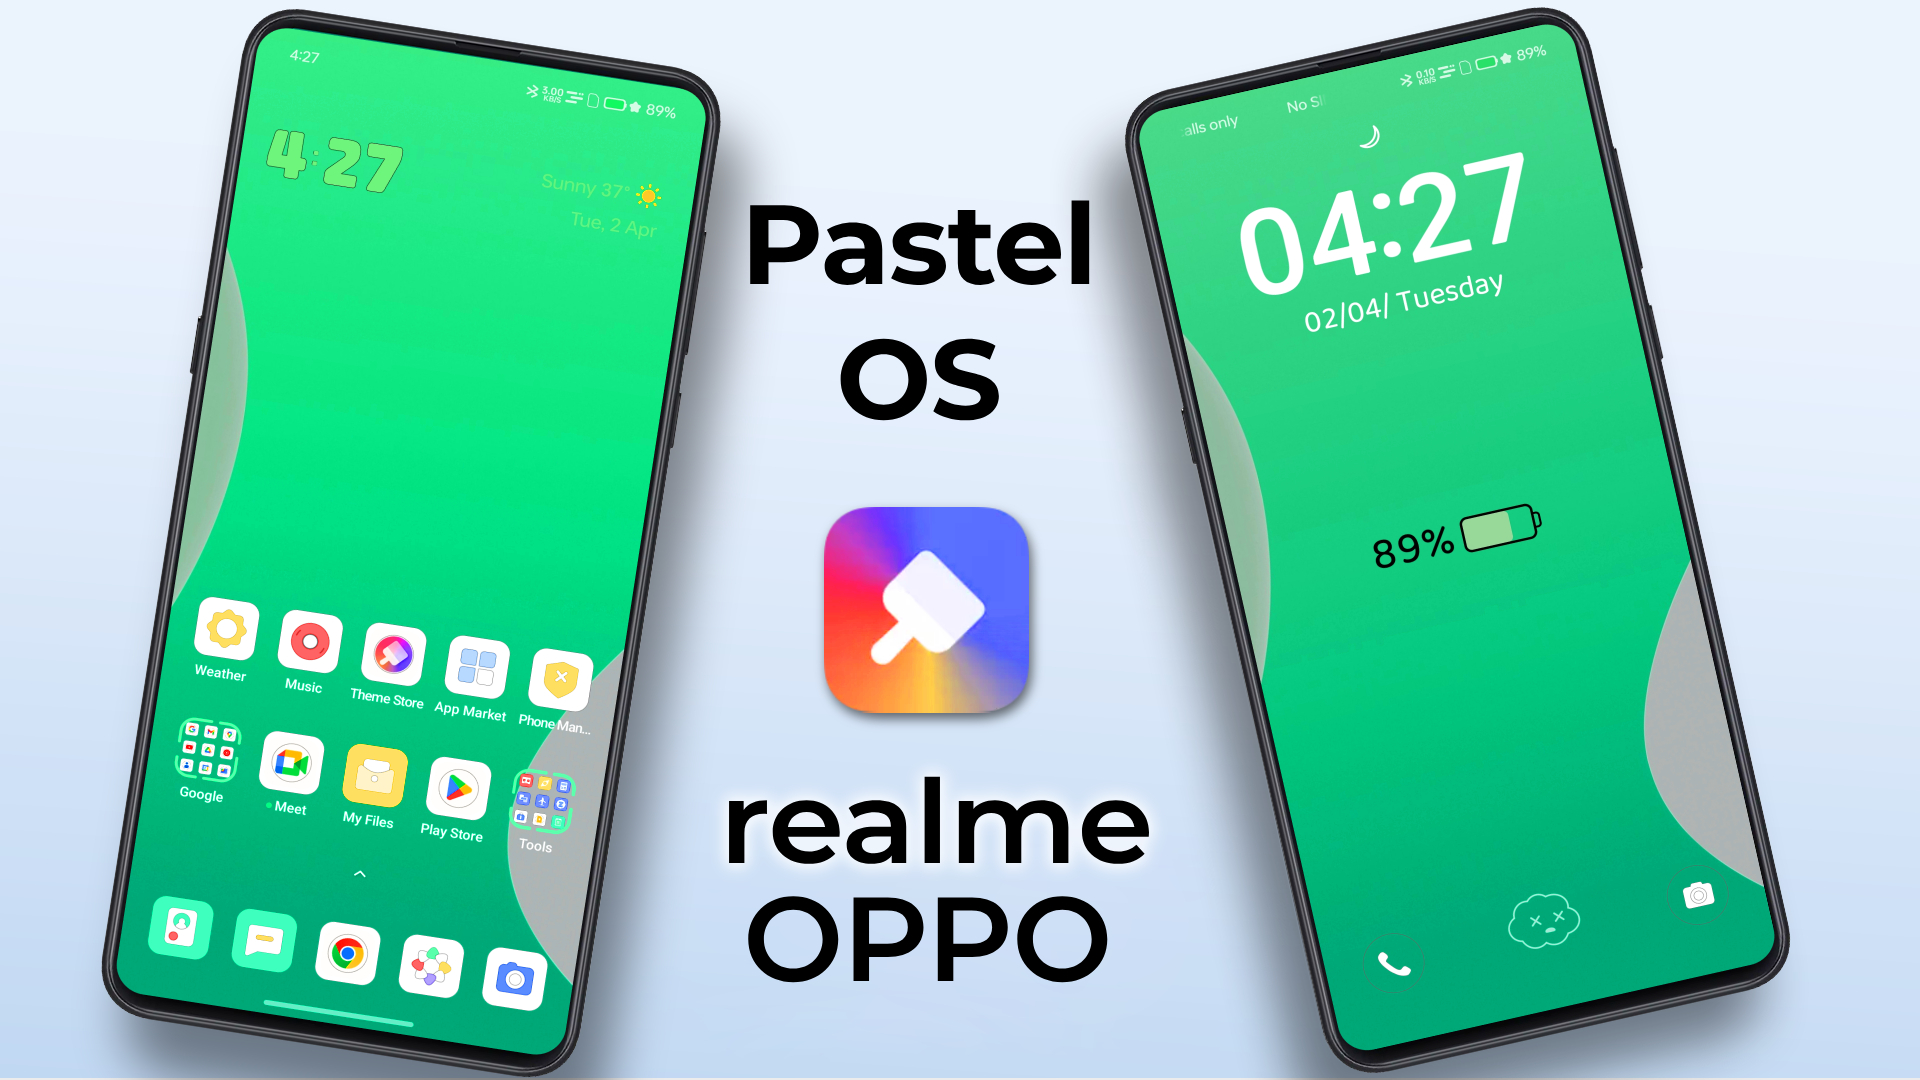 Pastel OS theme for realme